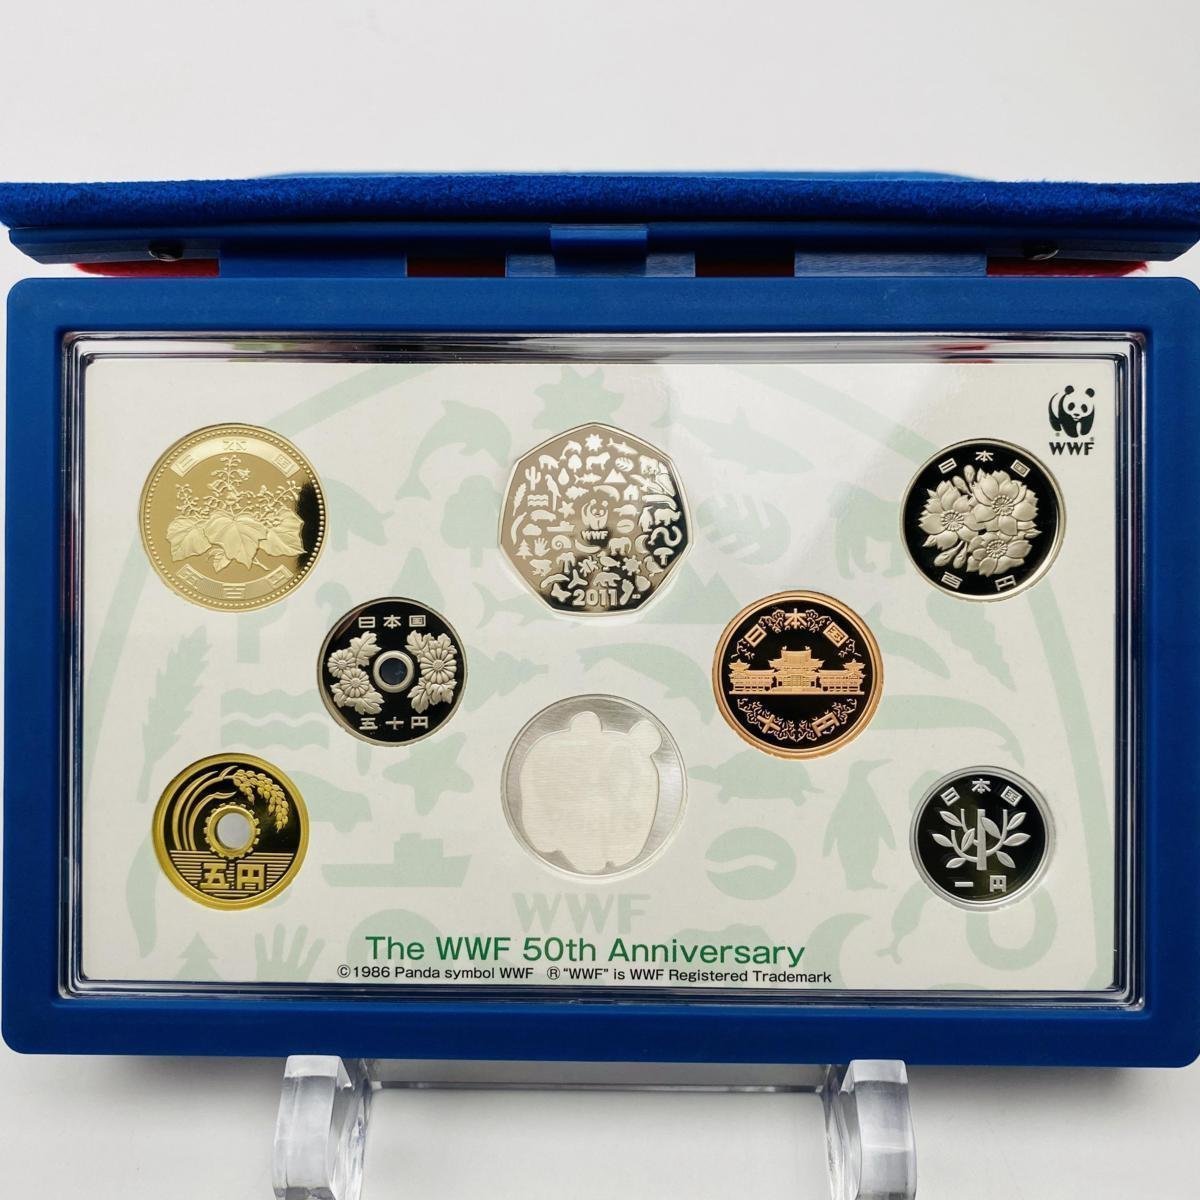 1円~ WWF設立50周年 日本 イギリス 2011年 プルーフ貨幣セット 額面666円+50p 銀約15.2g 記念硬貨 メダル PT2011w_画像1